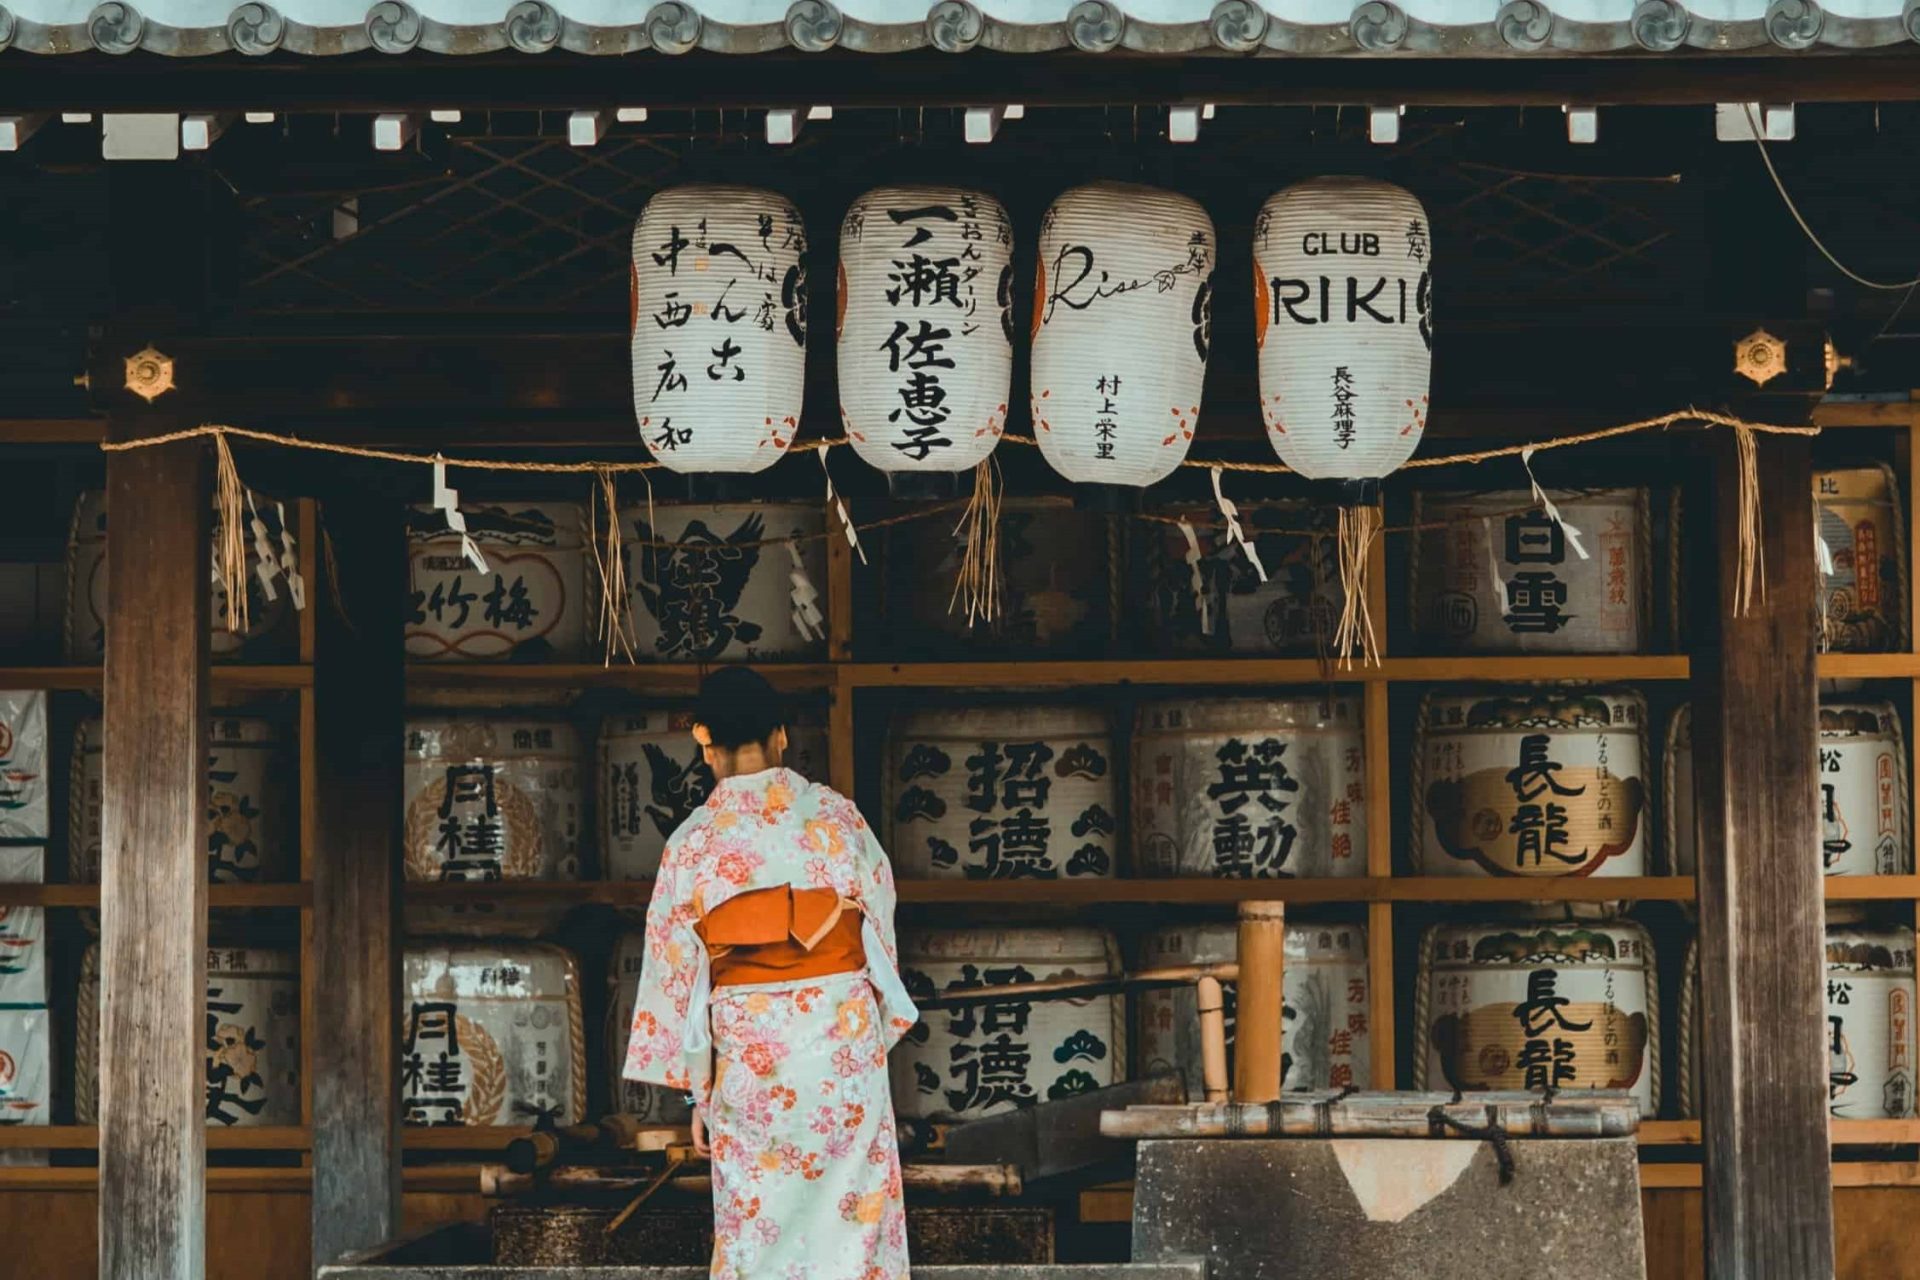 girl in kimono in front of barrels